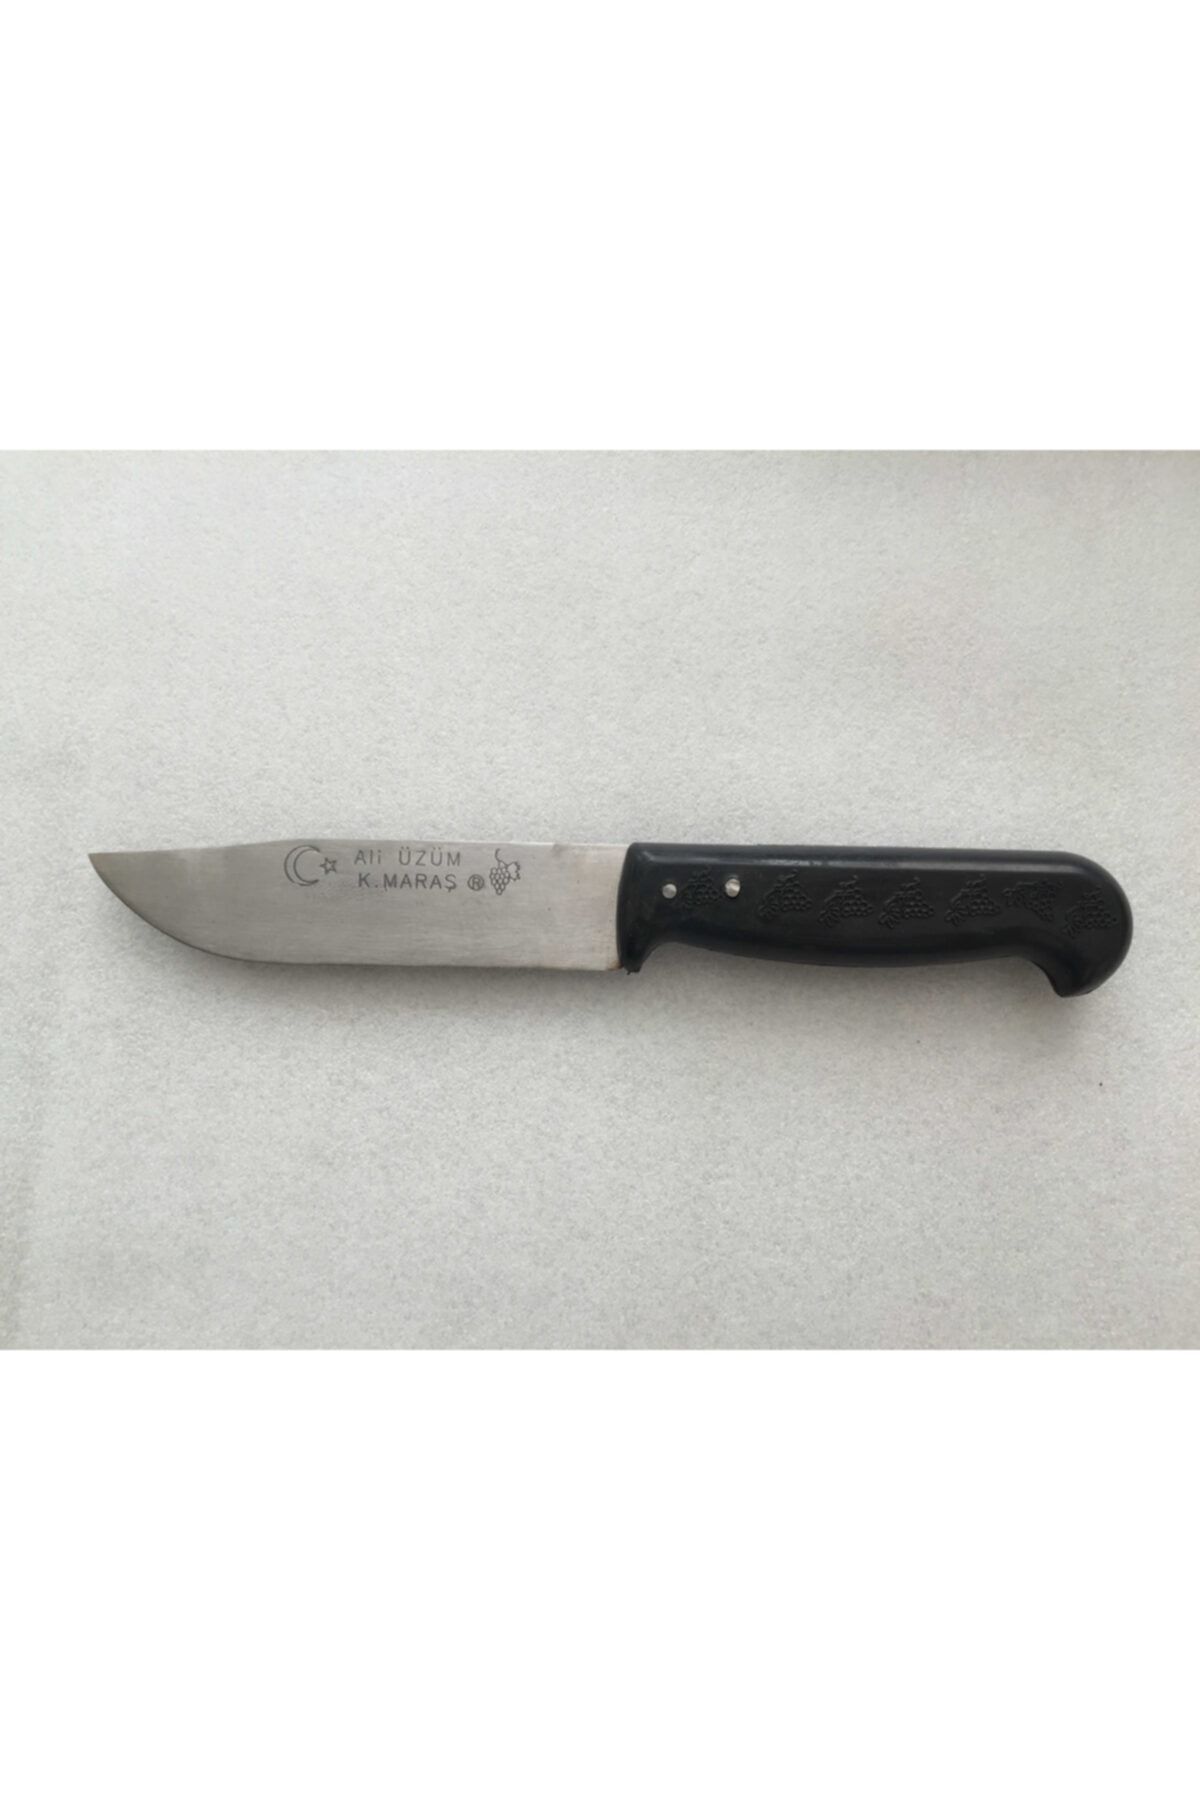 ÜZÜM ÇELİK Mobilreyon - Mutfak Bıçağı - Plastik Siyah Saplı Maraş Bıçak - 24cm